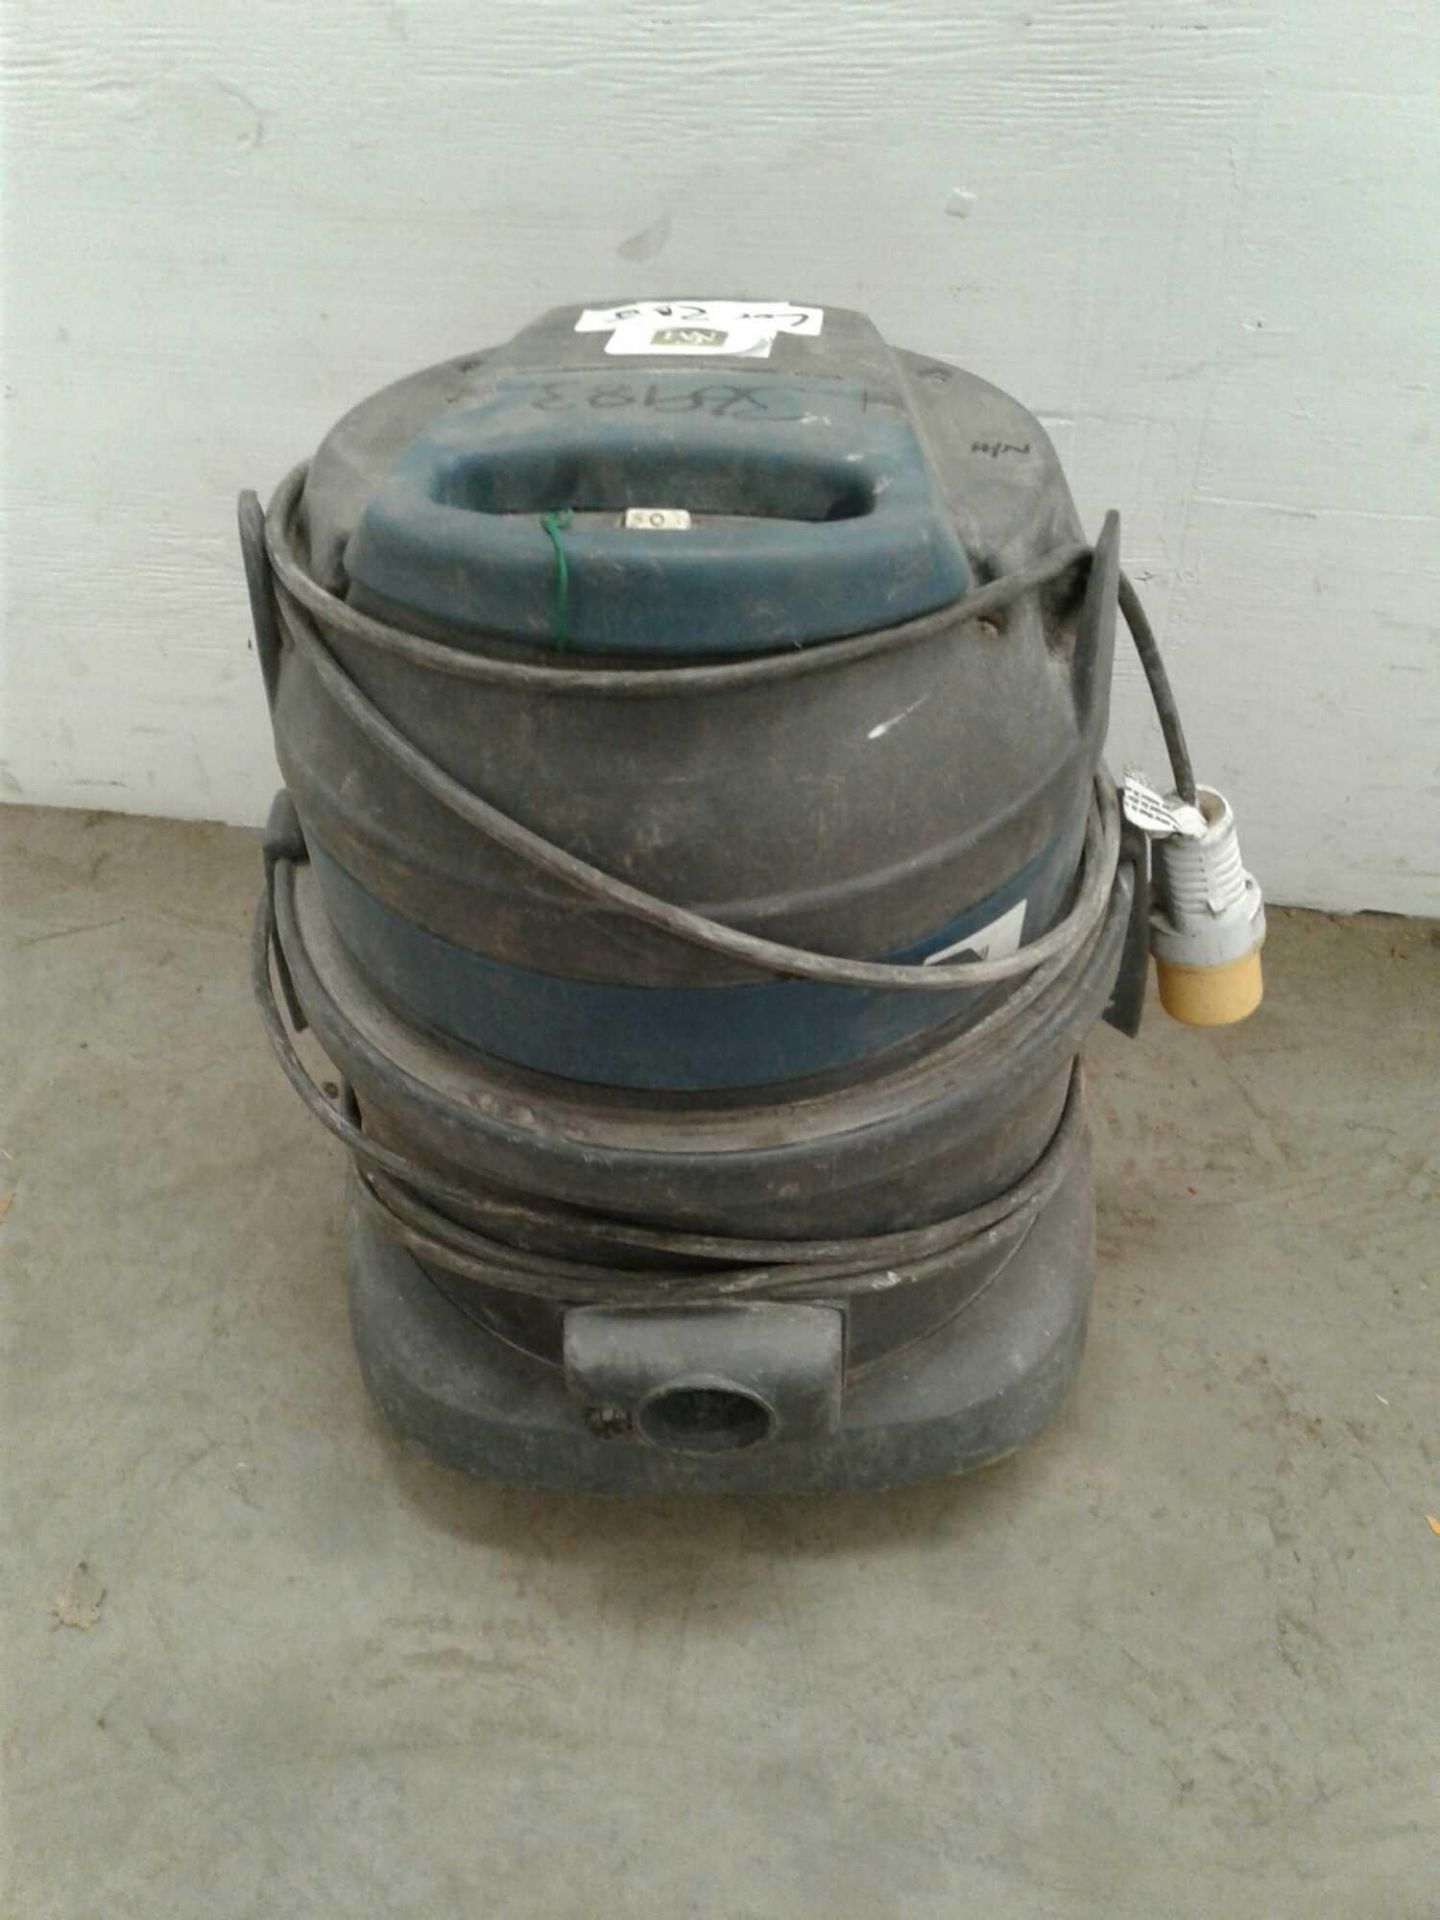 Vegas vacuum cleaner 110 b - Image 2 of 2